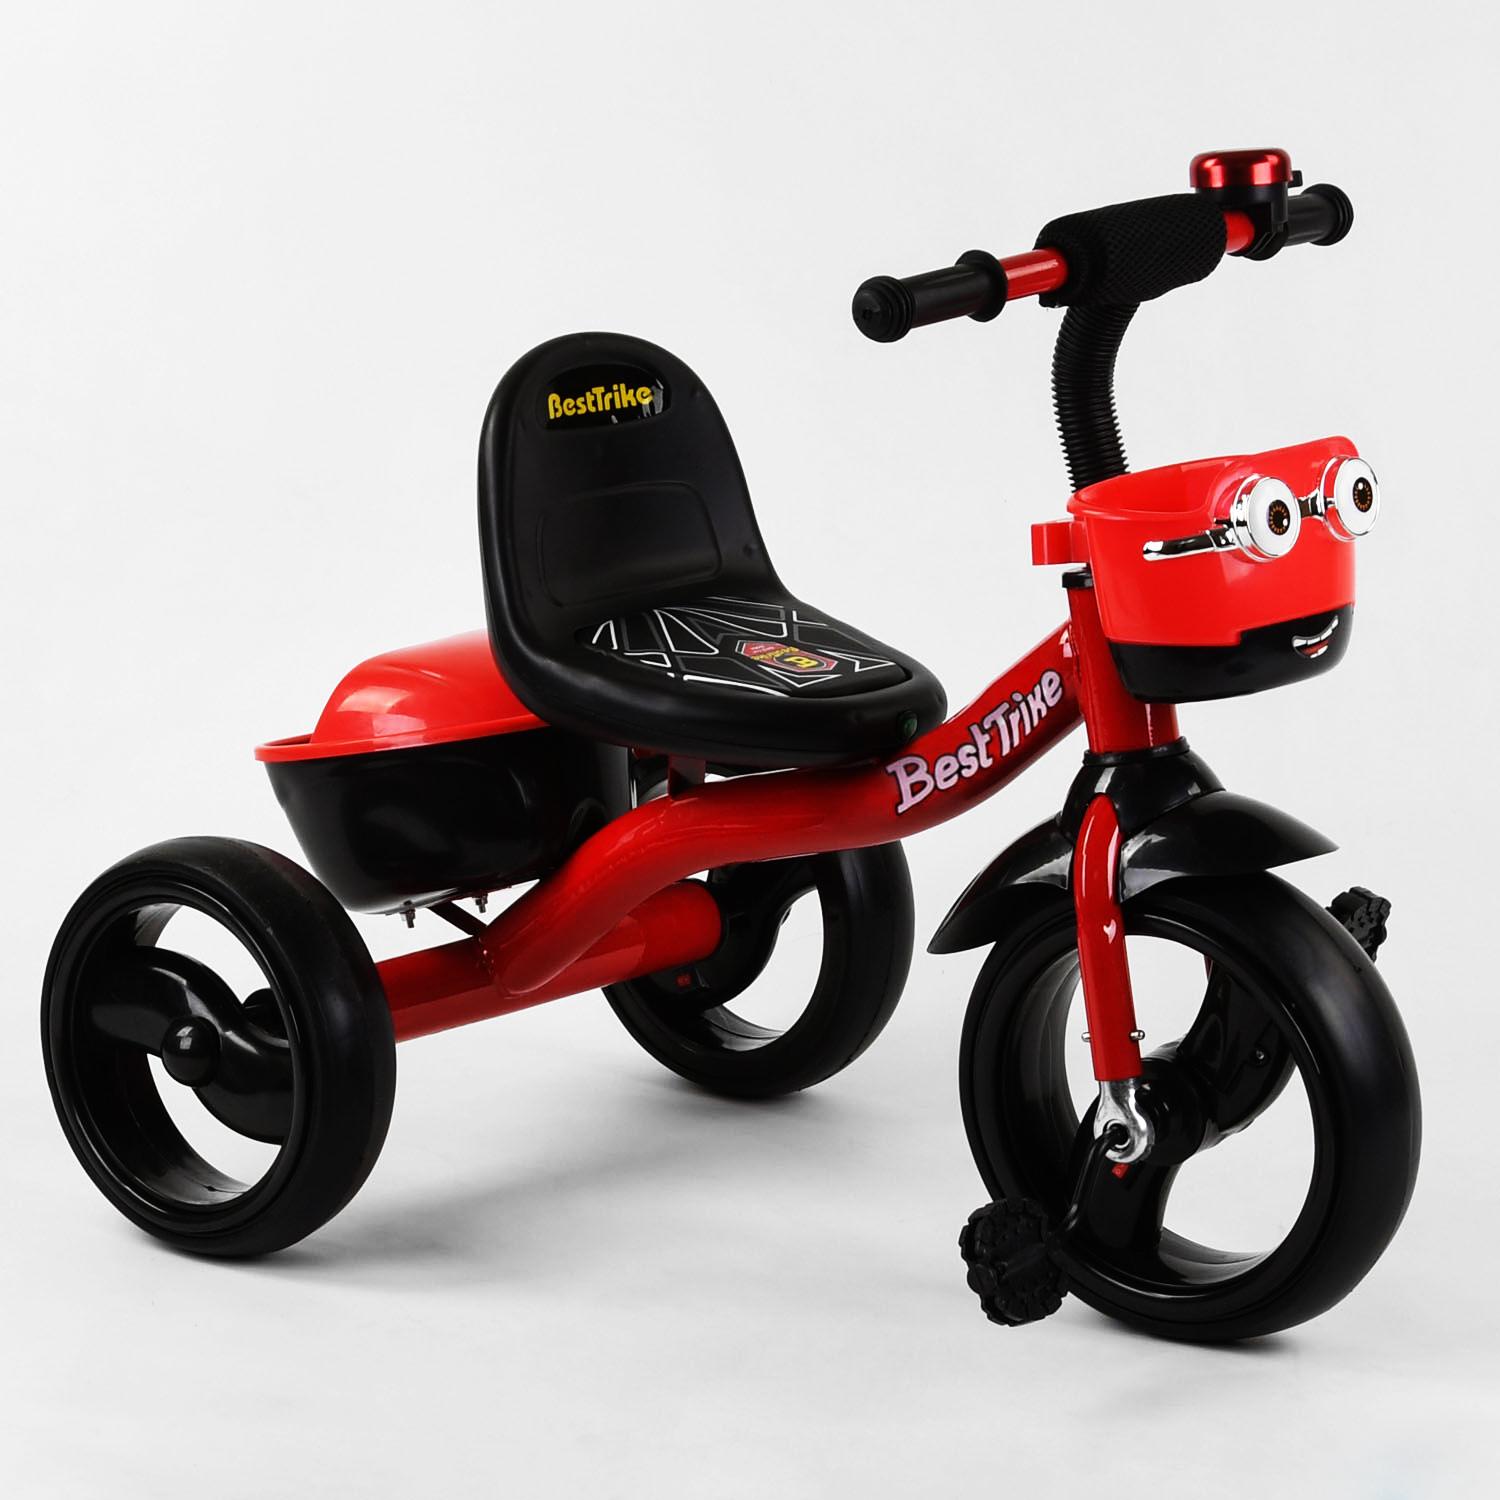 Детский велосипед трехколесный Best Trike колеса светящиеся музыка 2 корзинки Red (102422)